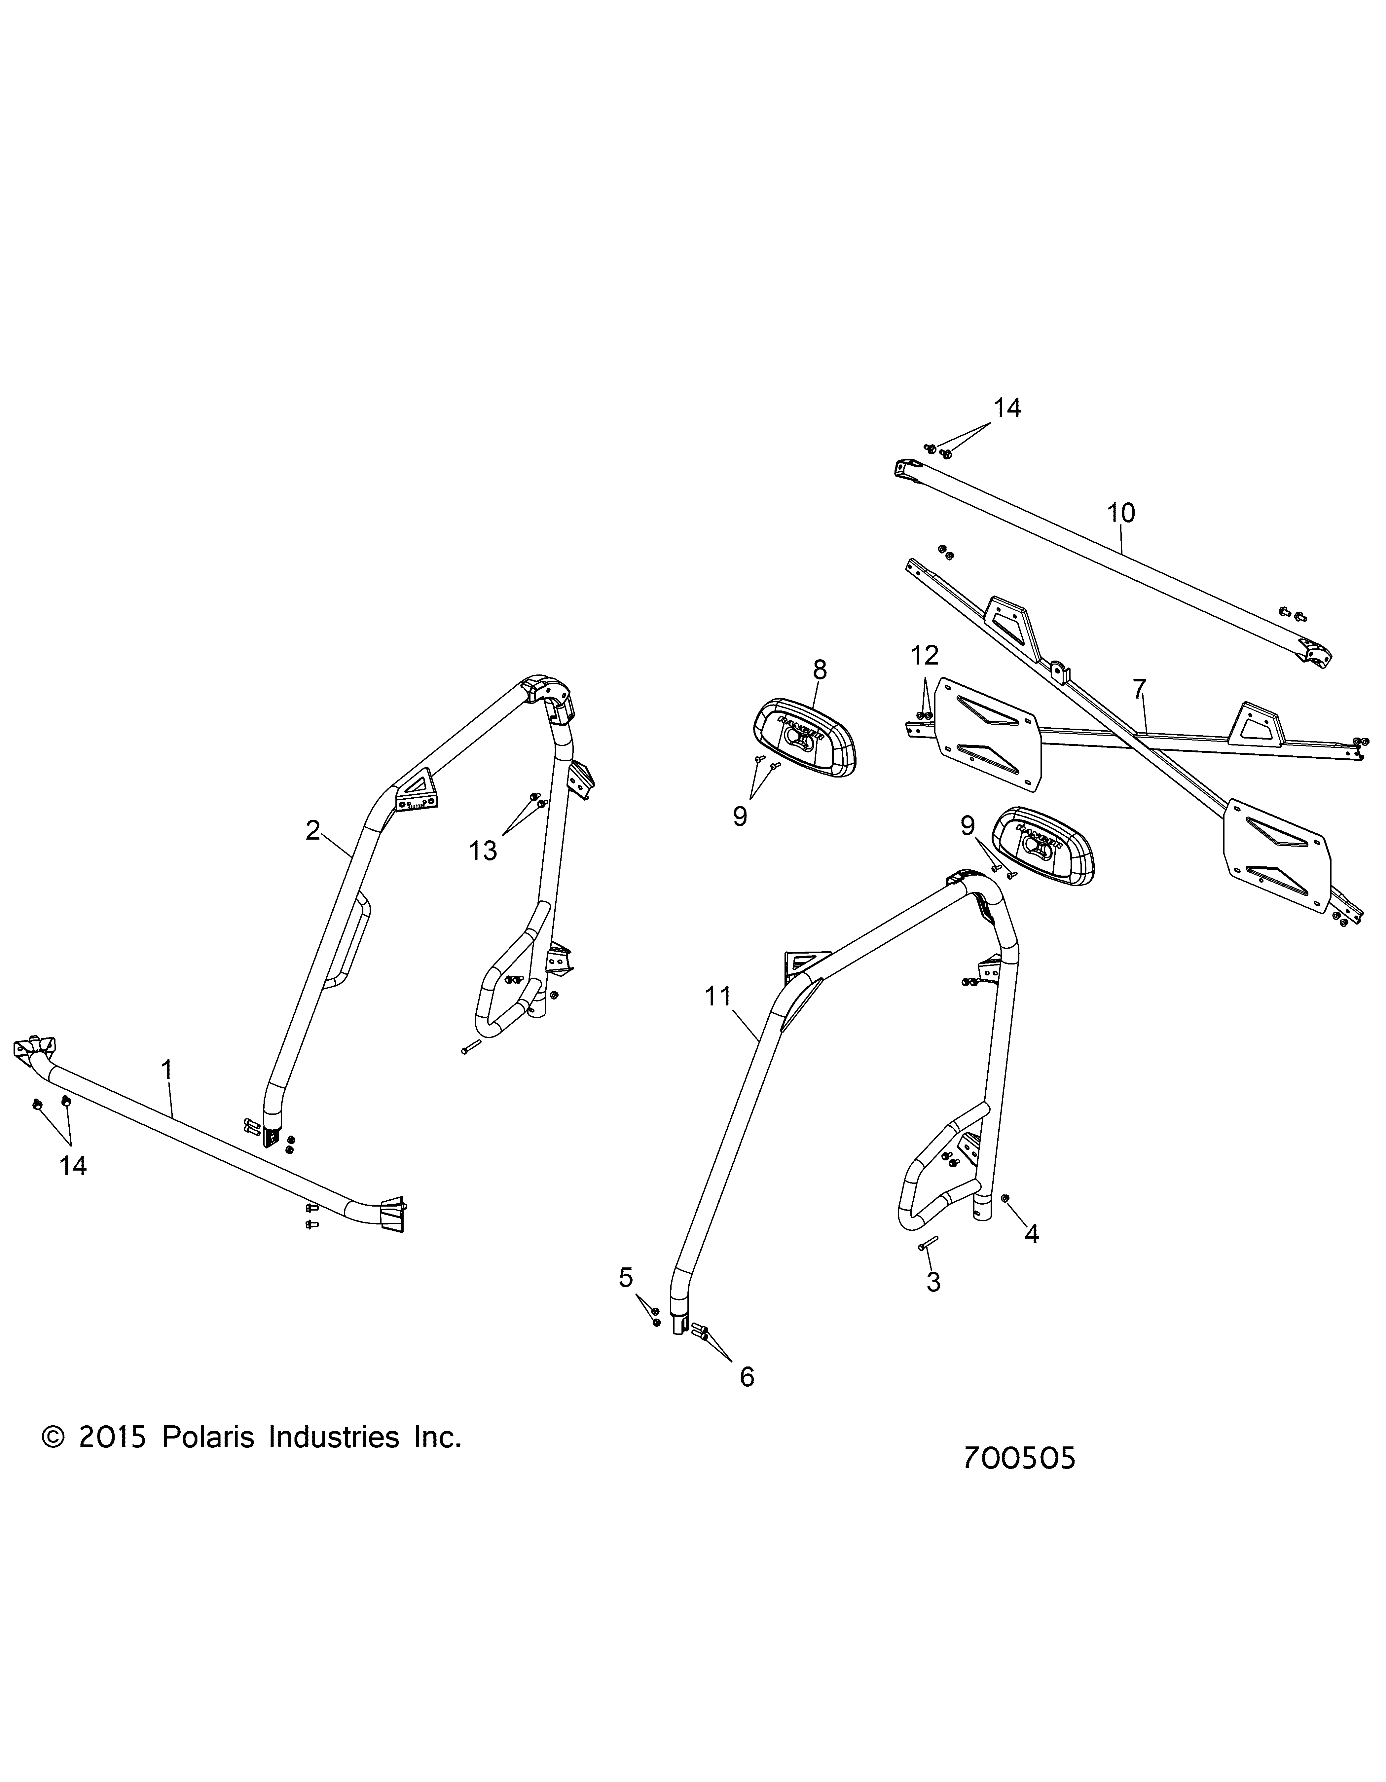 Foto diagrama Polaris que contem a peça 7515339